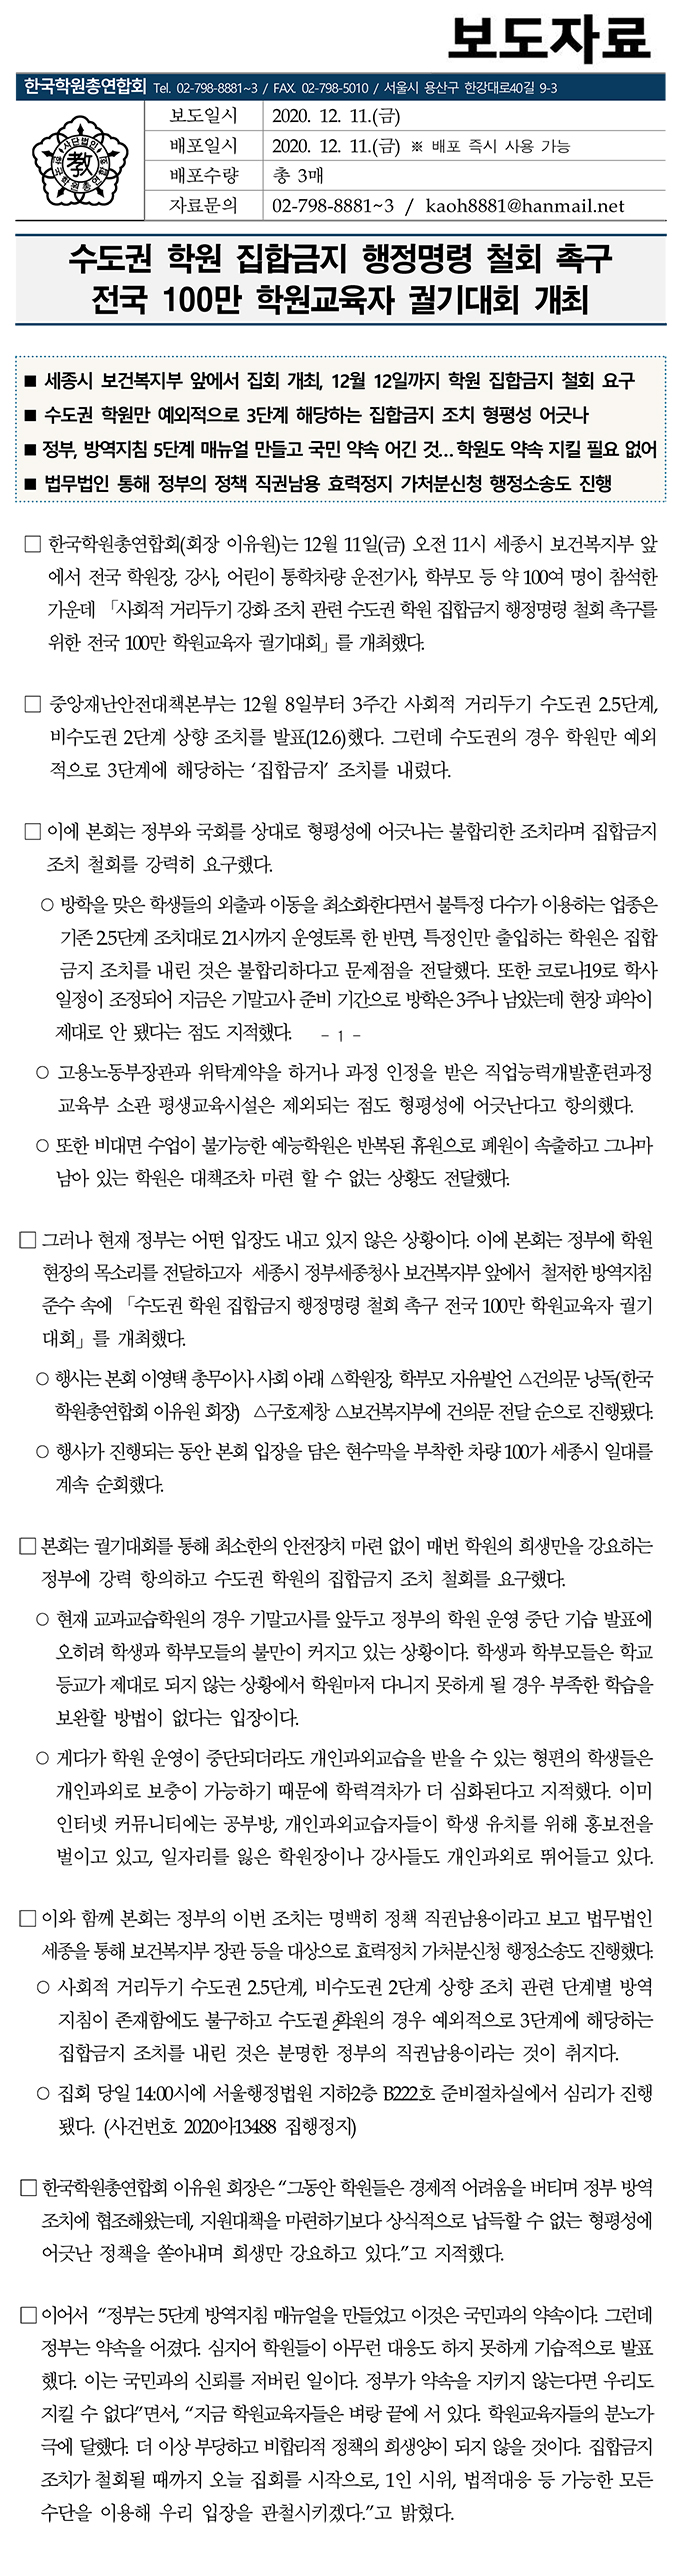 집합금지 철회 촉구 집회 개최_최종 2020.12.11.jpg